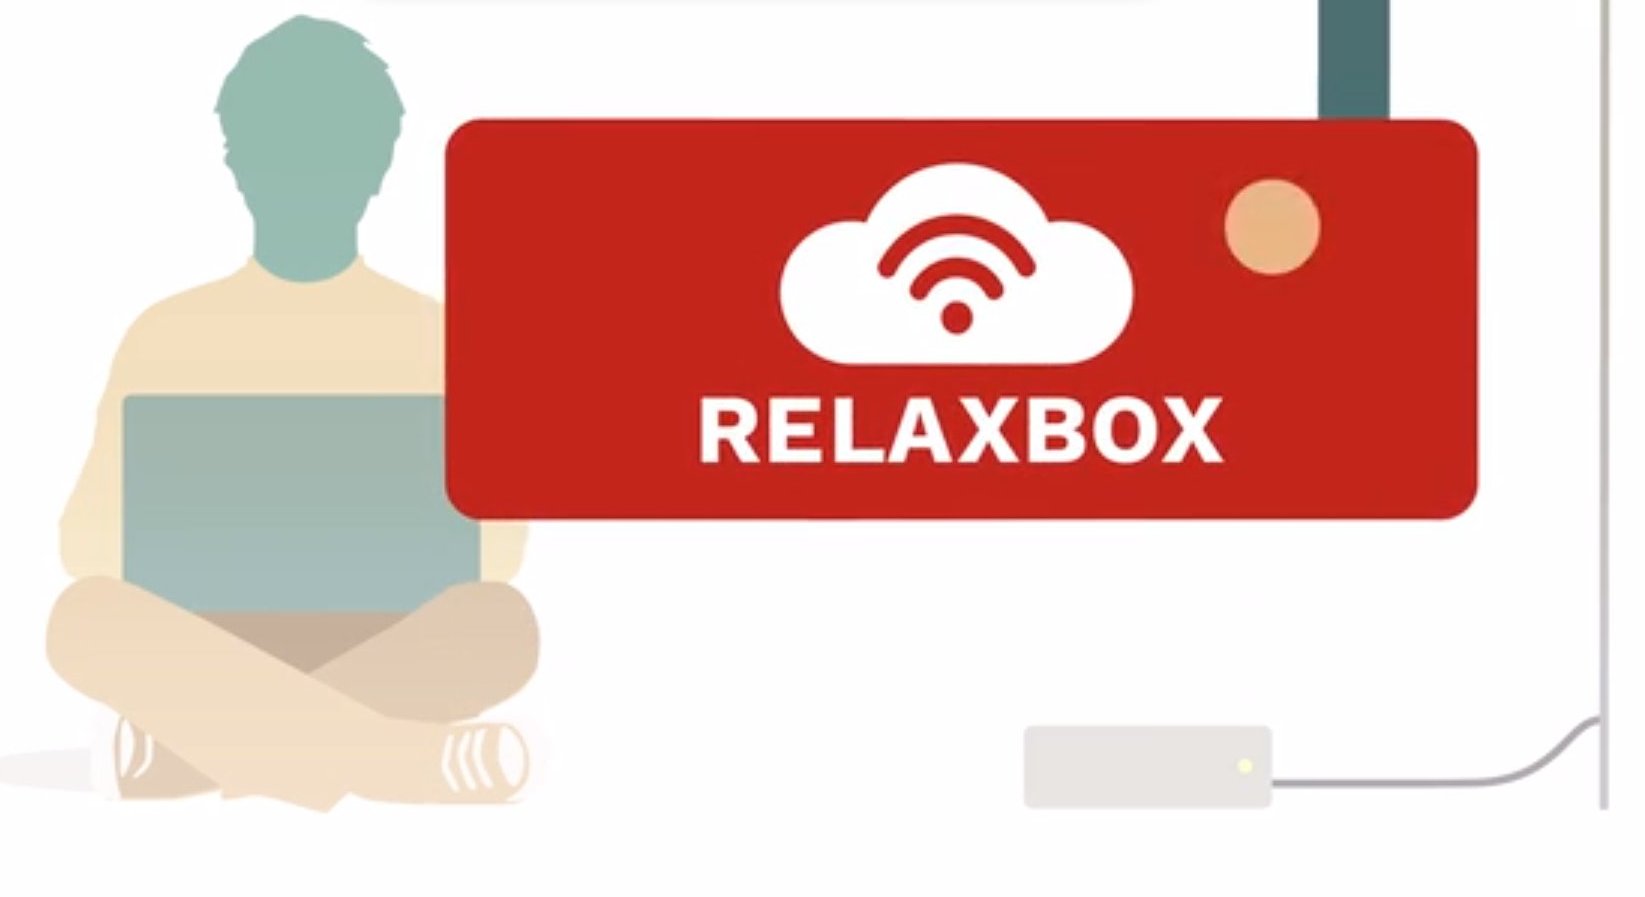 RelaxBox